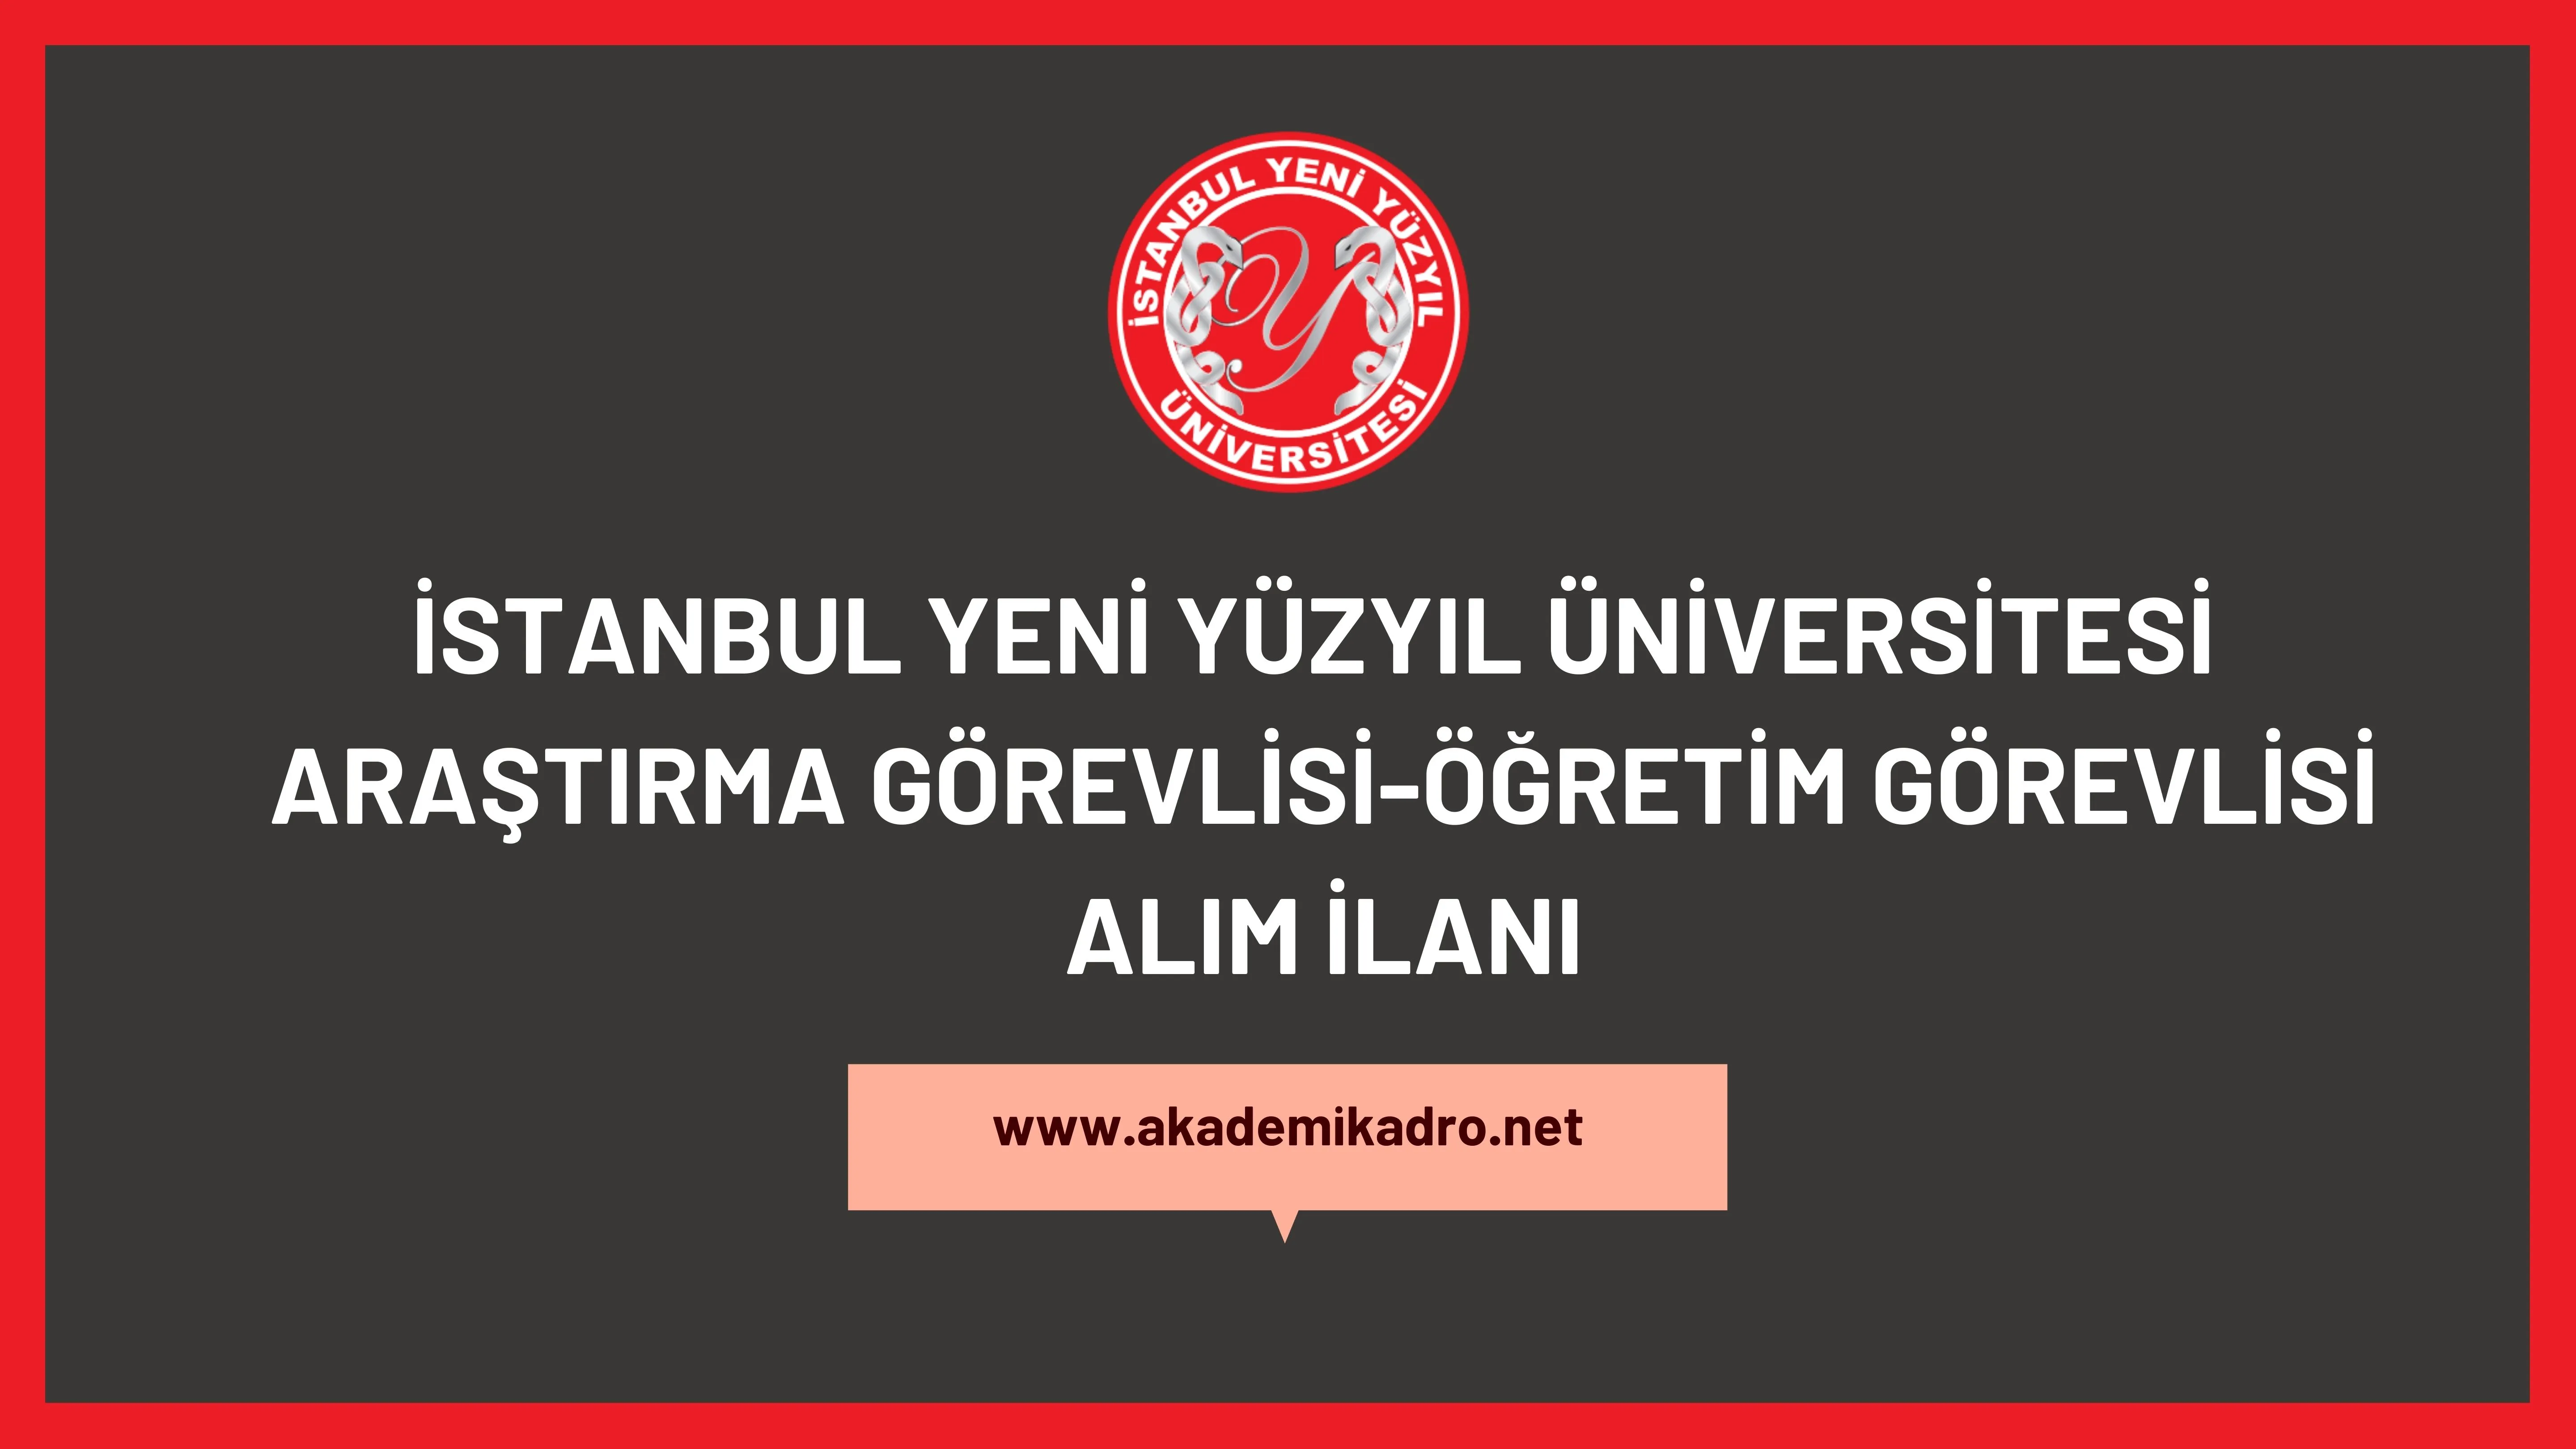 İstanbul Yeni Yüzyıl Üniversitesi 30 öğretim üyesi, 6 öğretim görevlisi ve 6 araştırma görevlisi alacaktır.